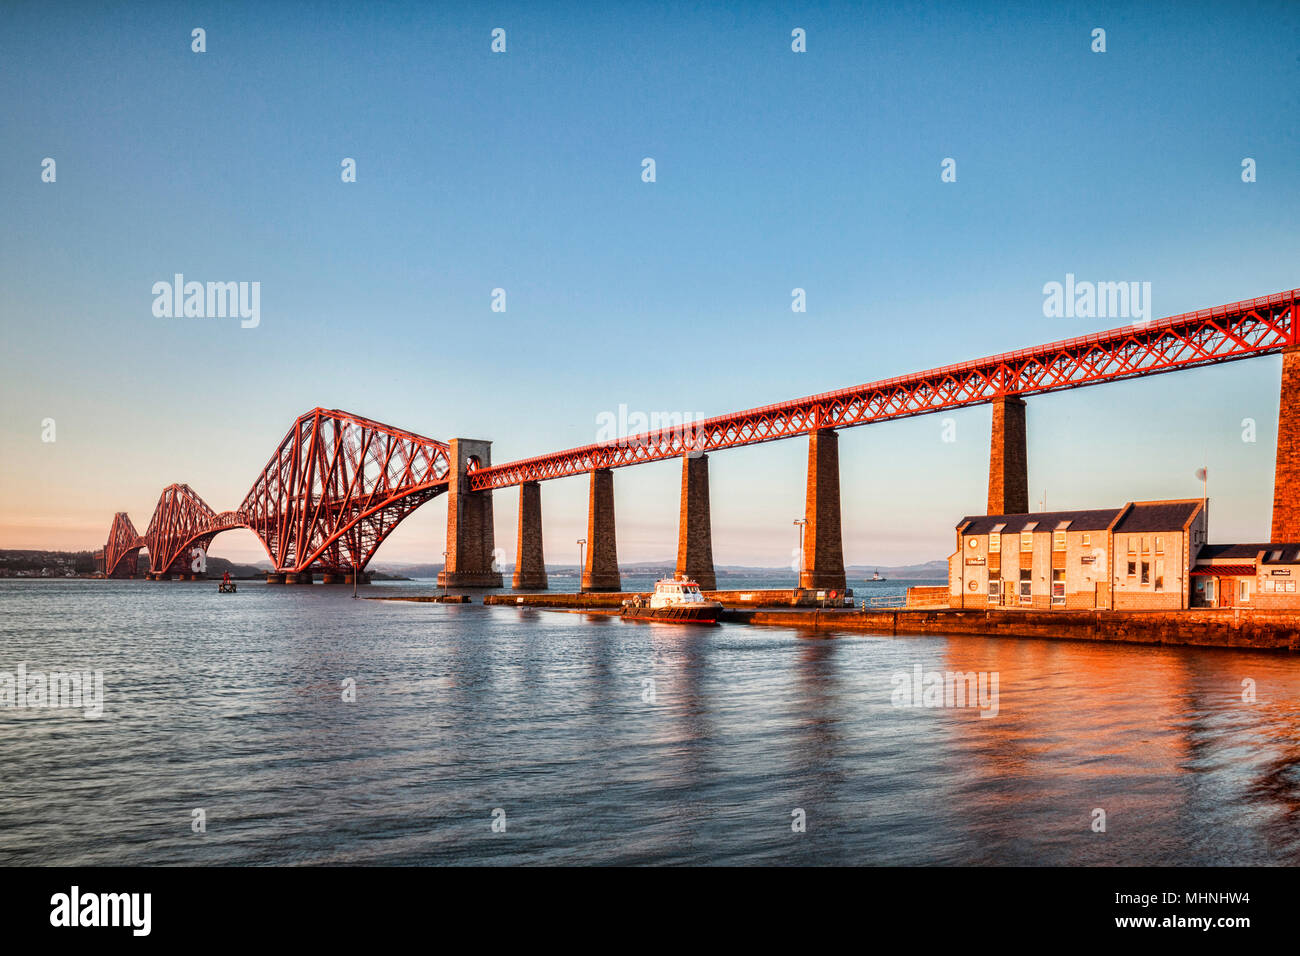 10. April 2016: Edinburgh, Schottland - Forth Rail Bridge, Queensferry, Edinburgh, East Lothian, Schottland, Großbritannien, eine der berühmtesten Brücken der worl Stockfoto